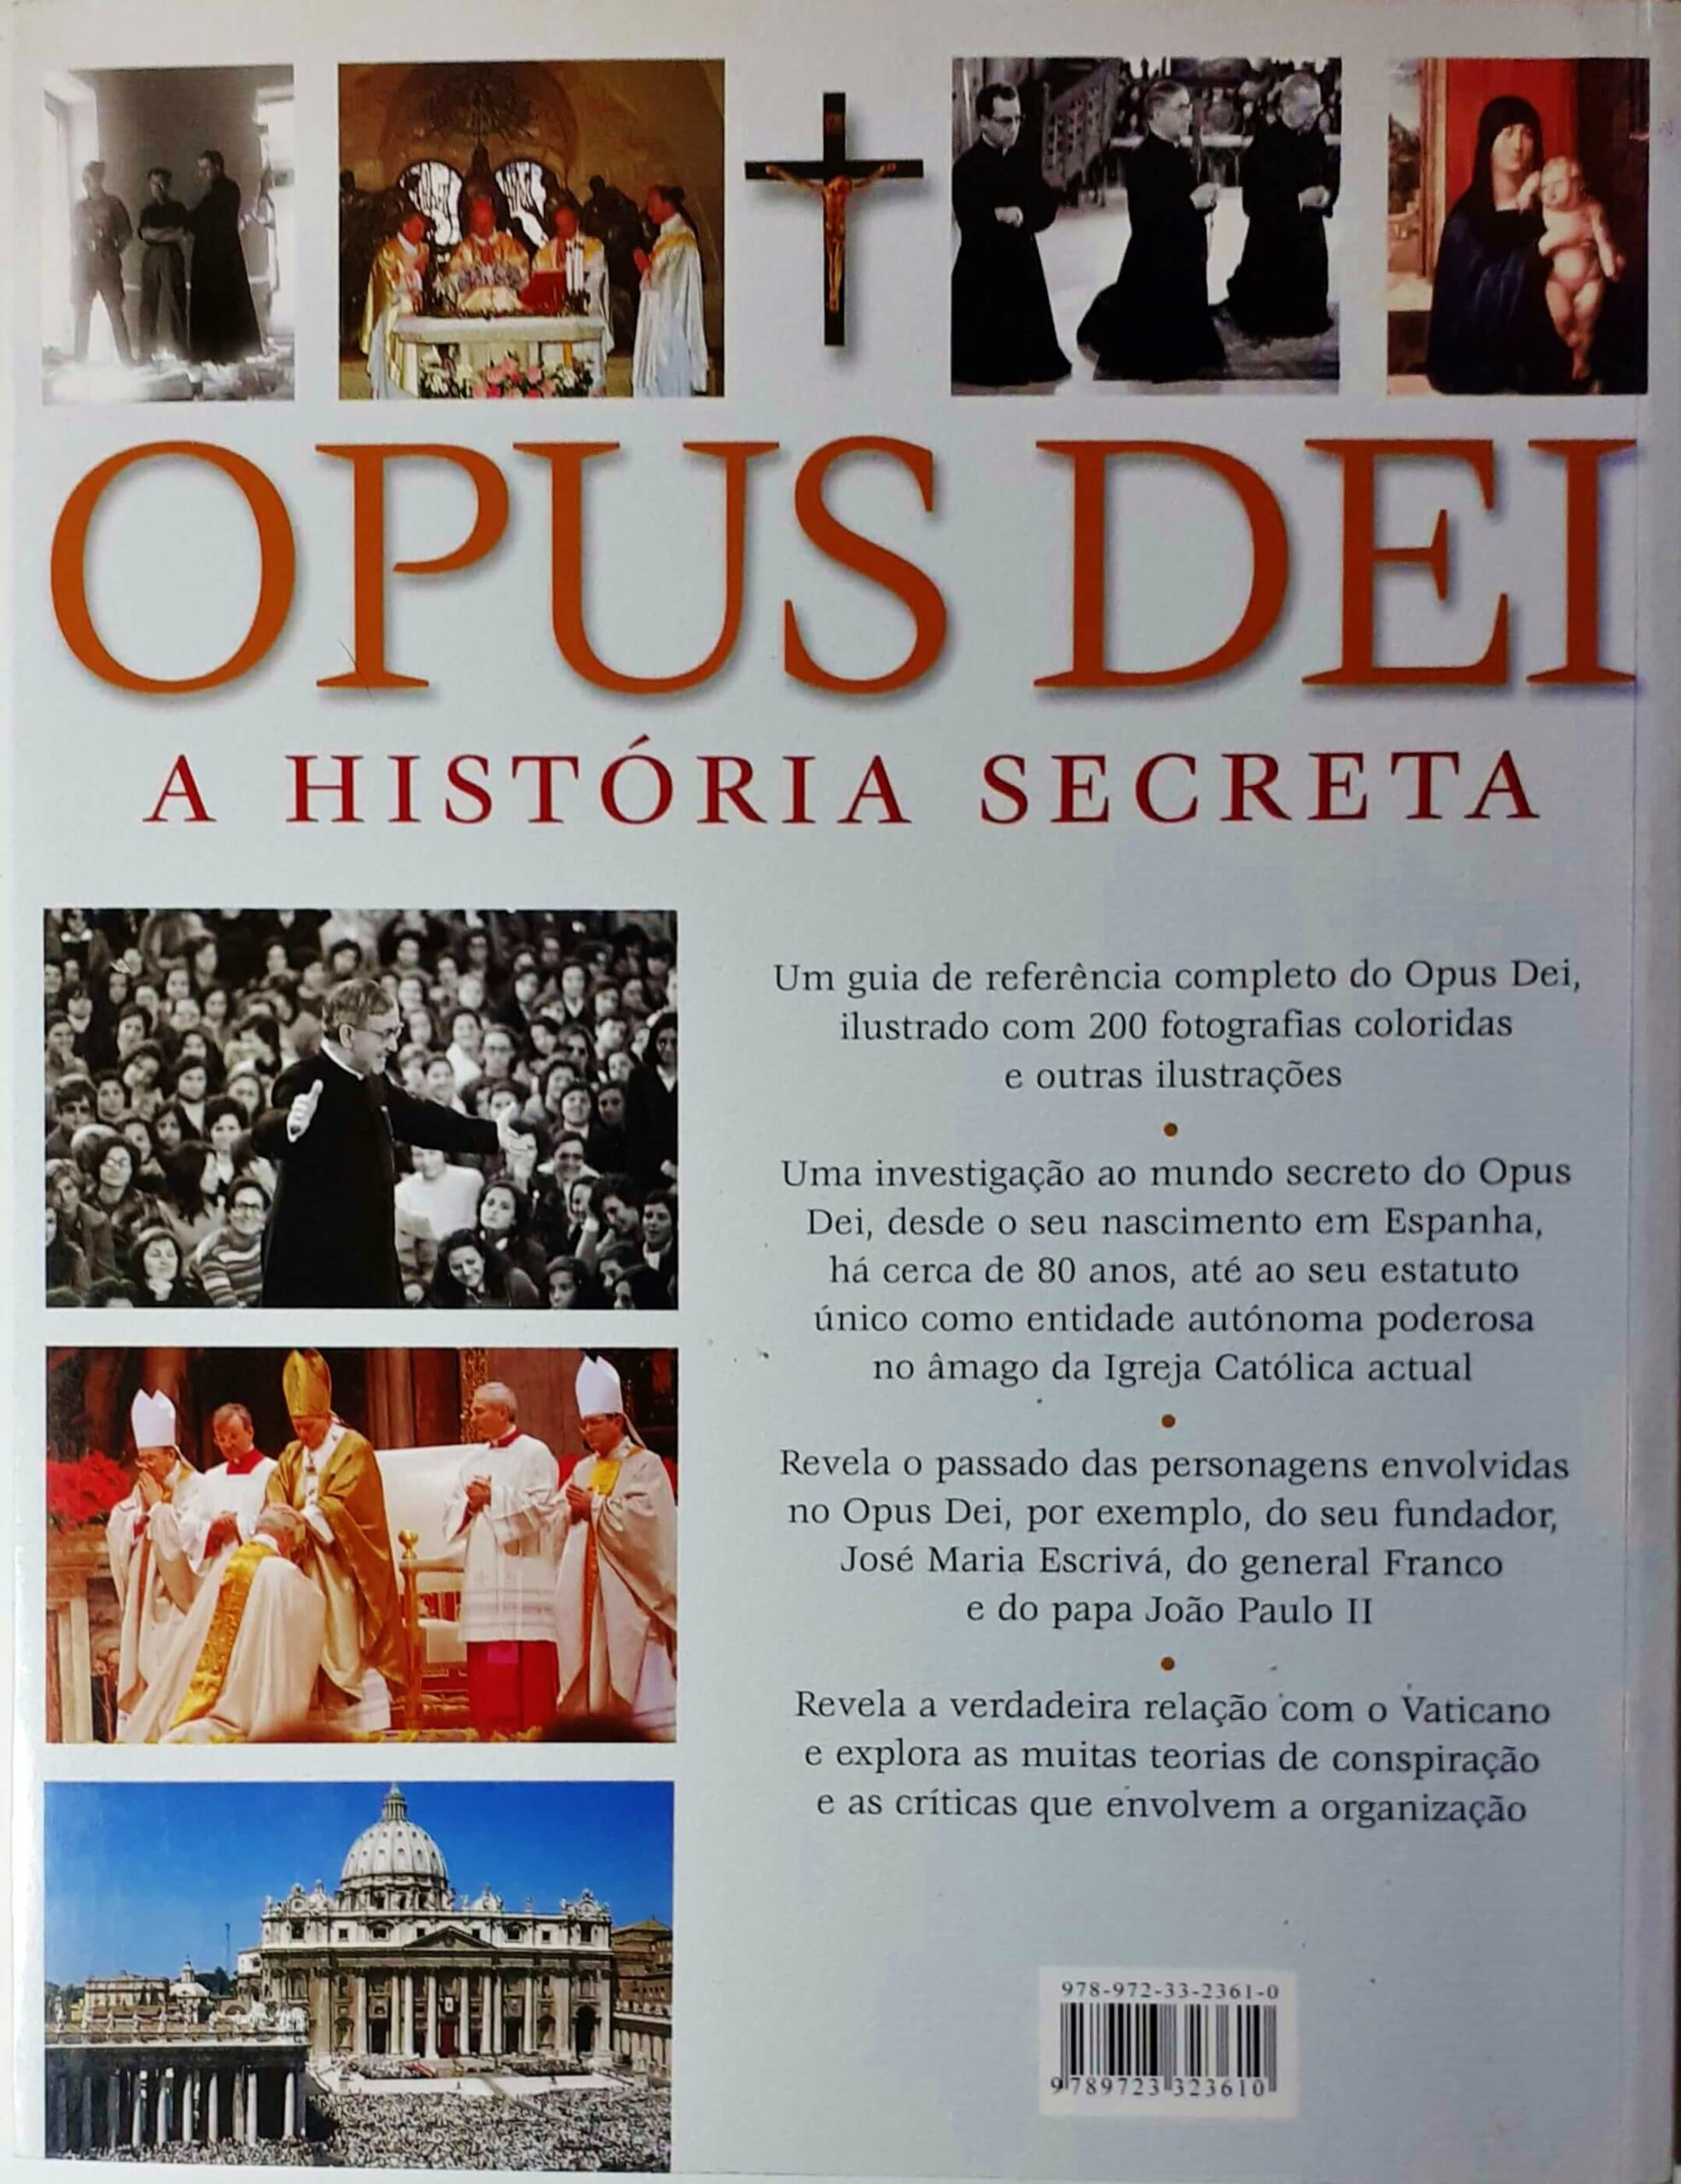 A vida do fundador do Opus Dei foi a aplicação mais eloquente da